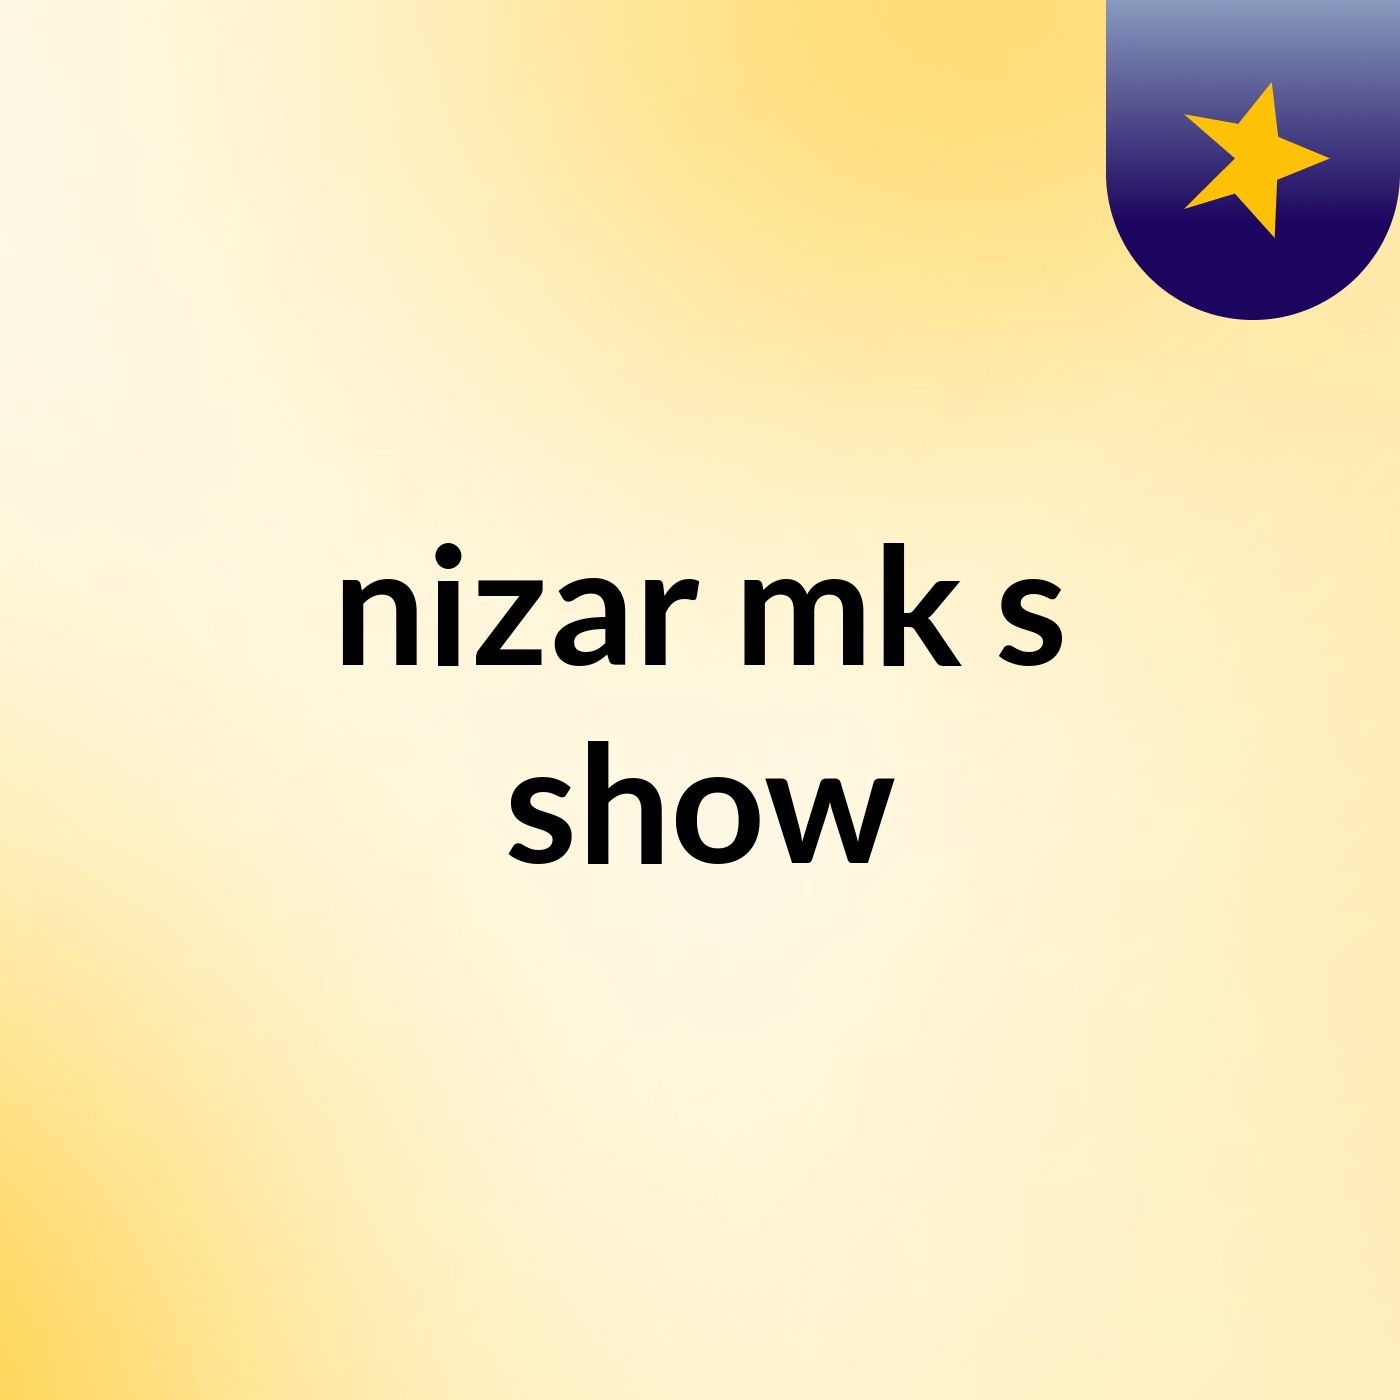 nizar mk's show